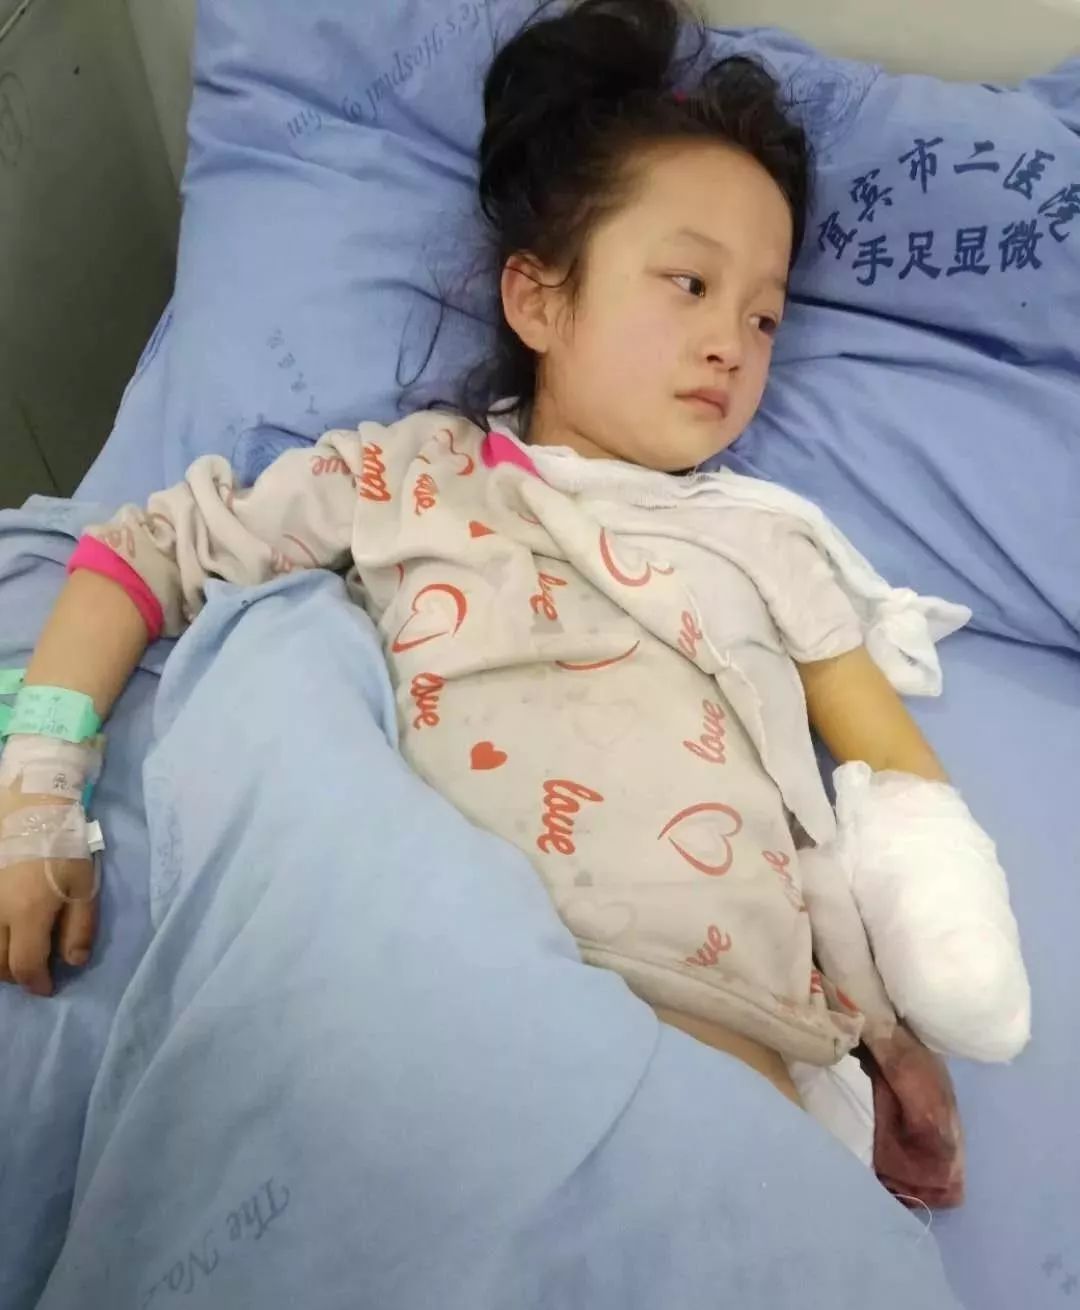 宜宾一8岁小女孩帮忙干活时被机器砍掉手掌,只能截肢.